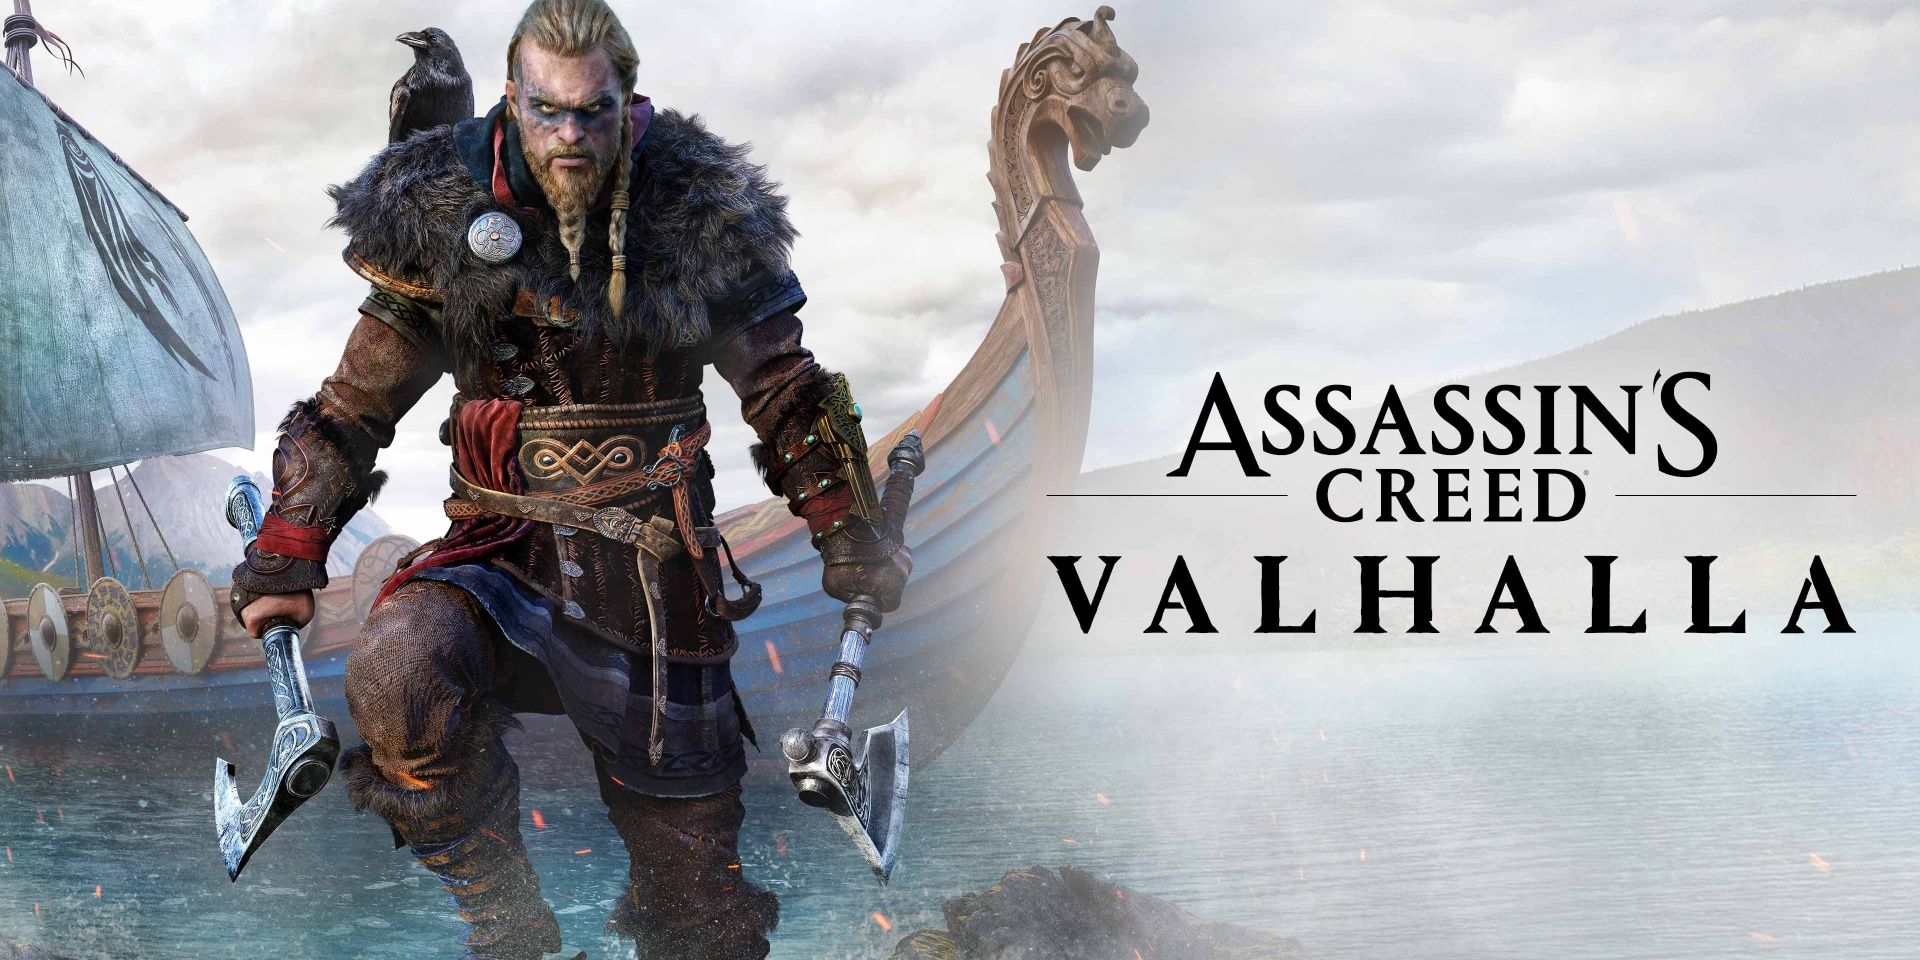 Eivor dari Assassin's Creed Valhalla berdiri mengancam dengan dua kapak di tangannya